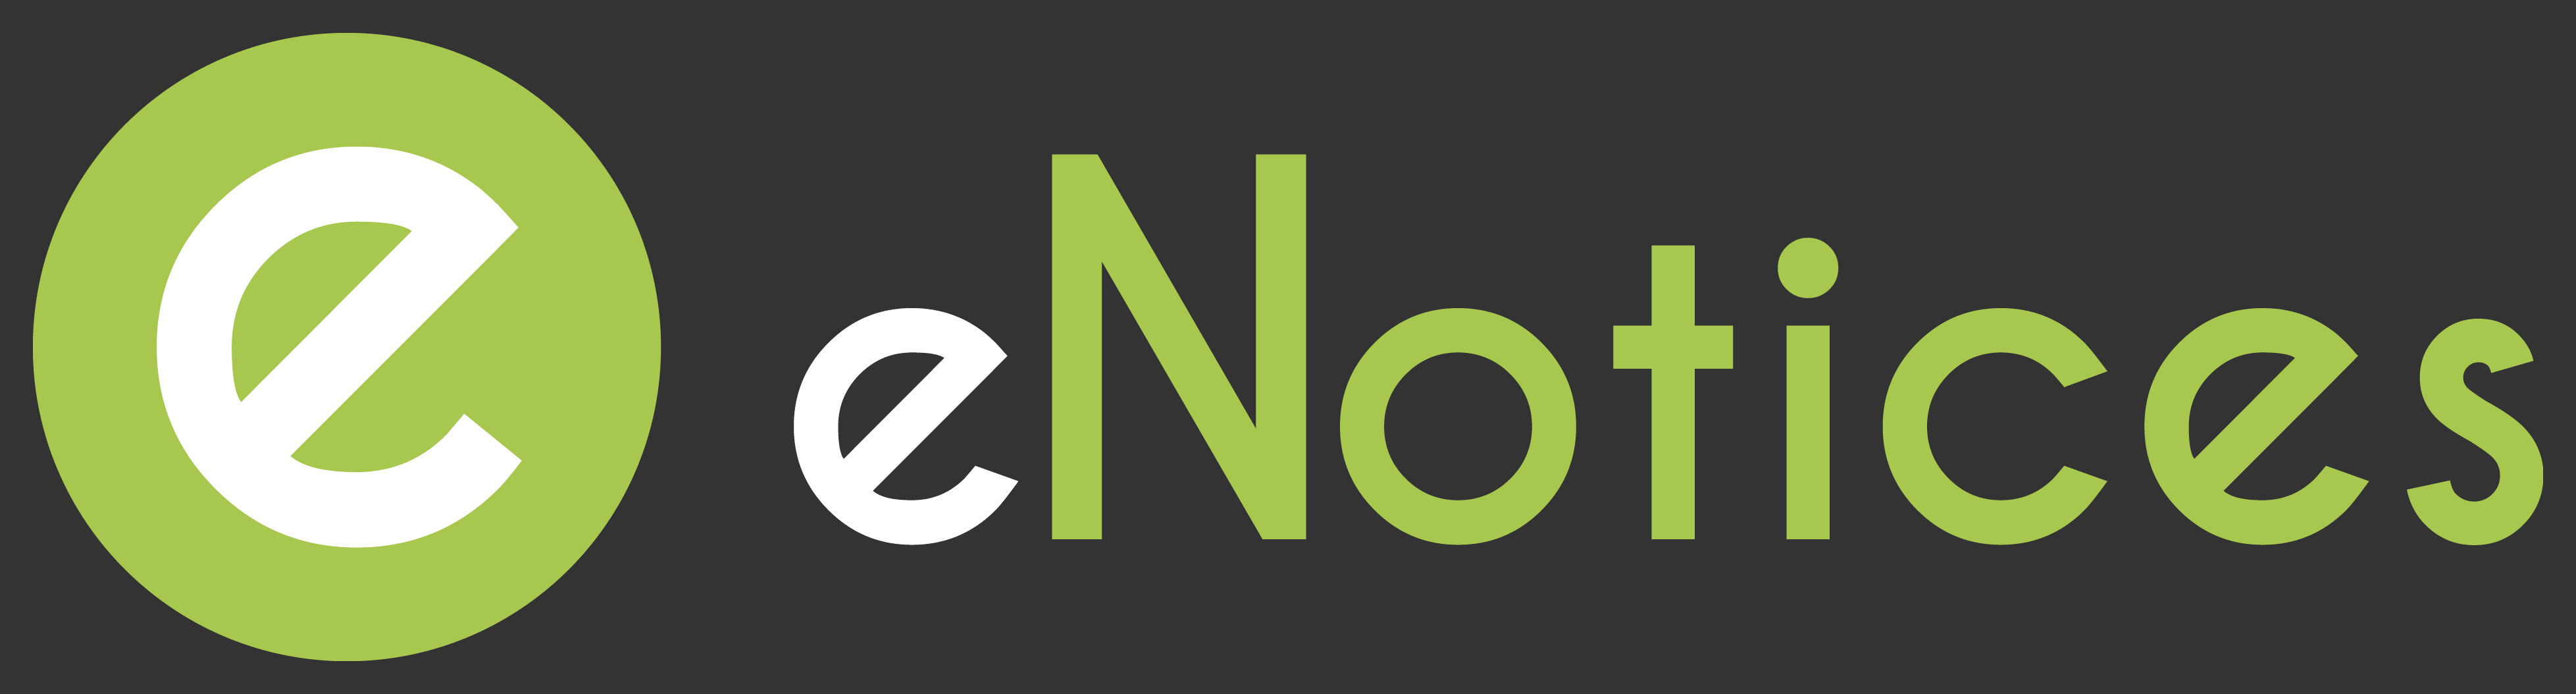 eNotice Portal